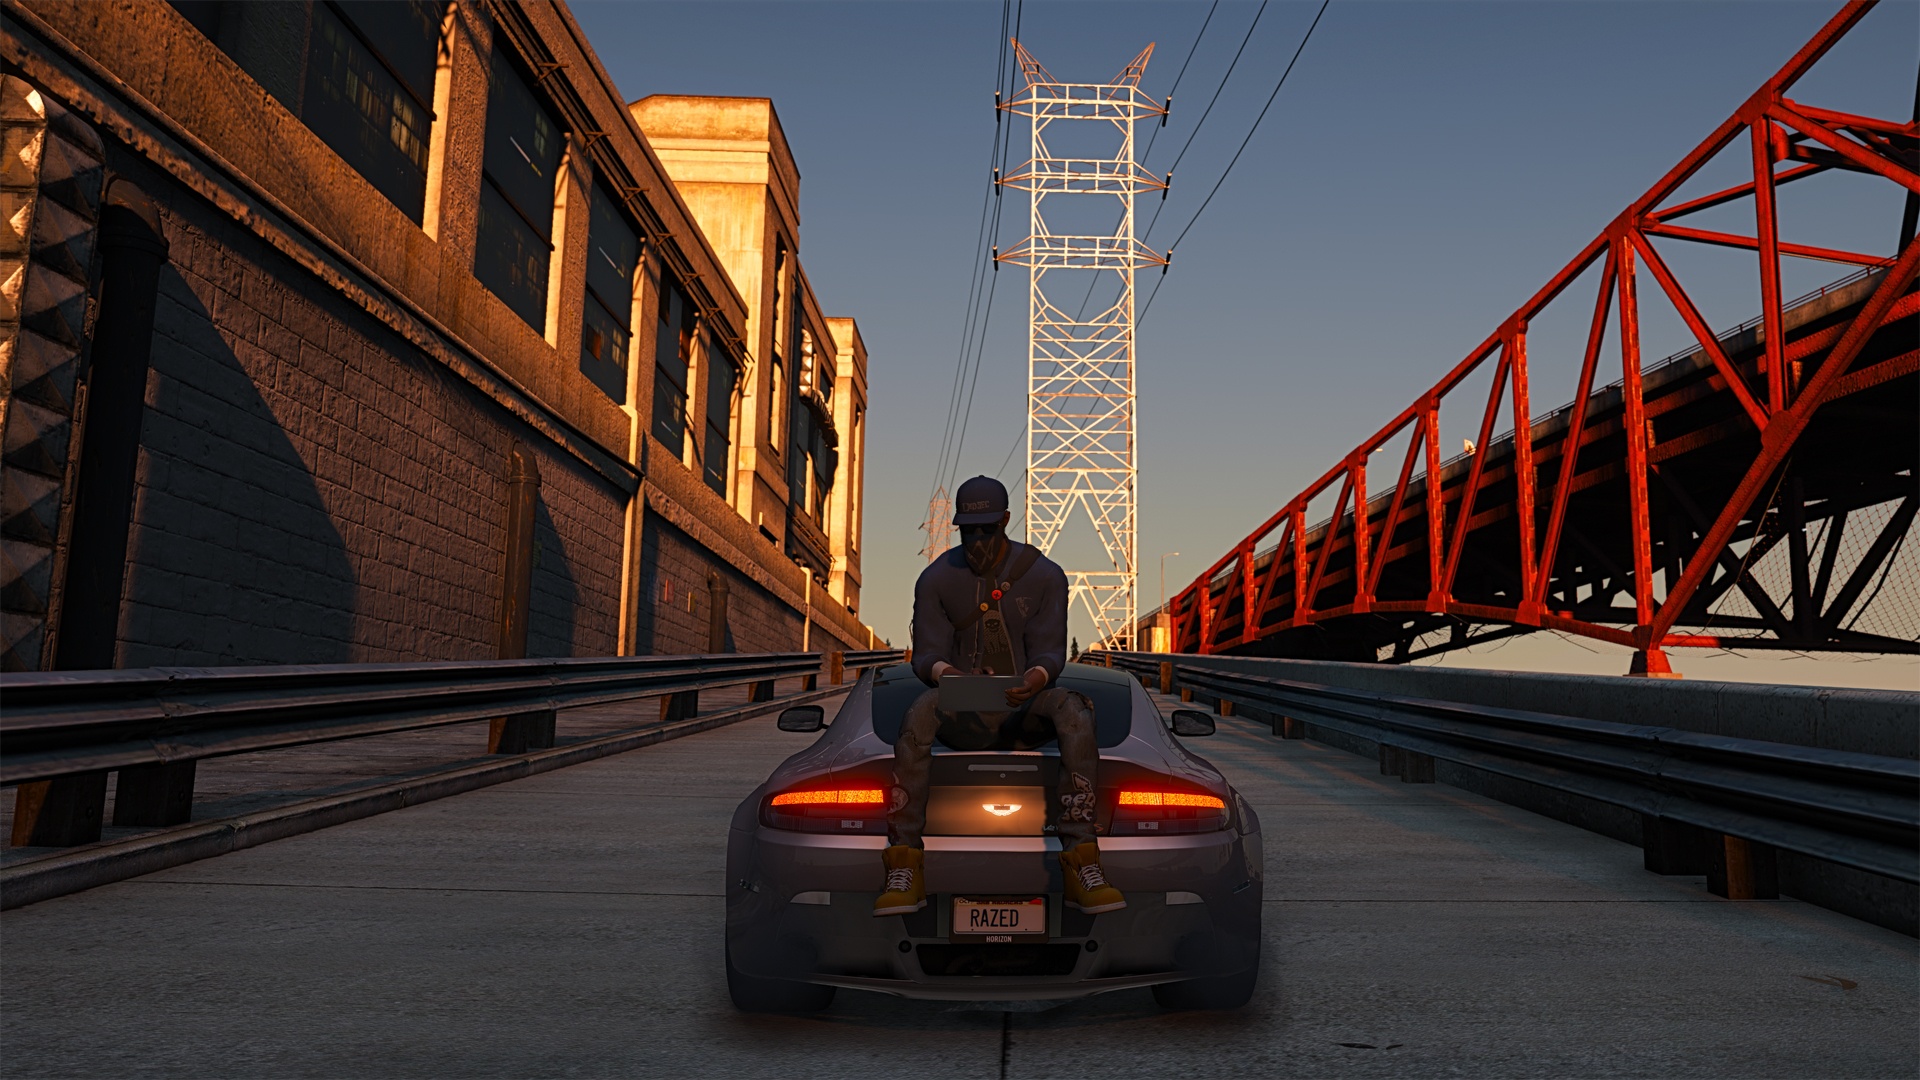 《侠盗猎车手5（GTA5）》PC版截图 4K级画质羡煞主机 - 新闻发布 - Chiphell - 分享与交流用户体验